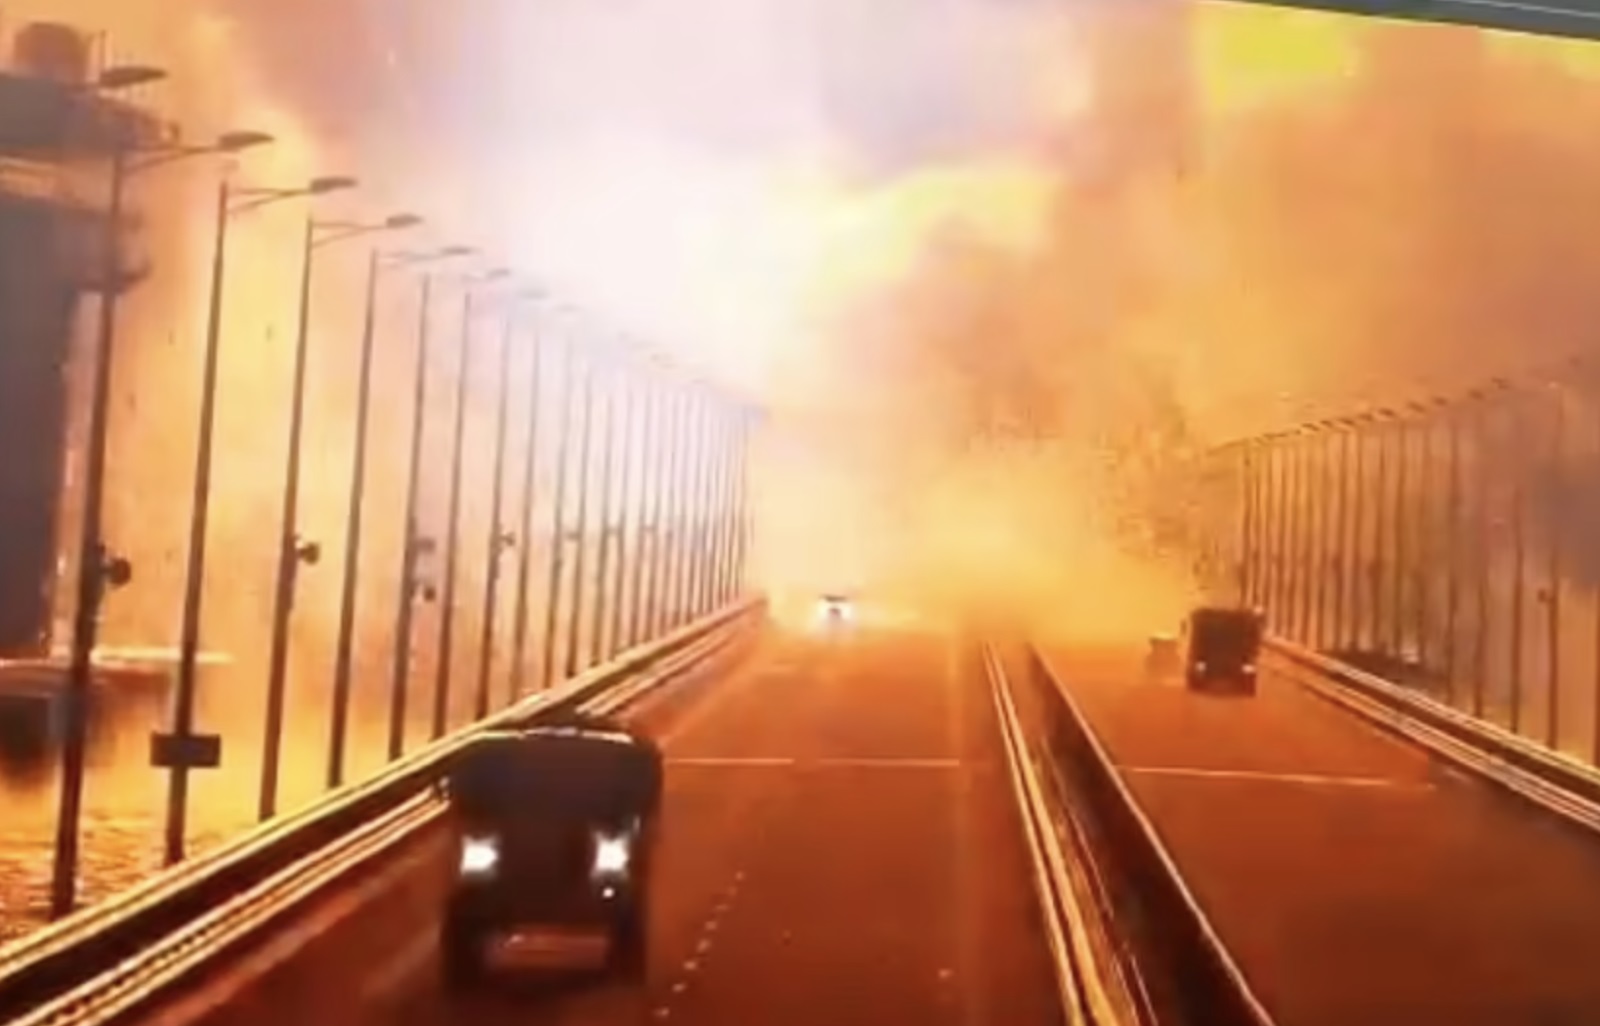 Khoảnh khắc chiếc xe bom nổ tung trên cầu Crimea vào sáng 8/10. Ảnh: D.M